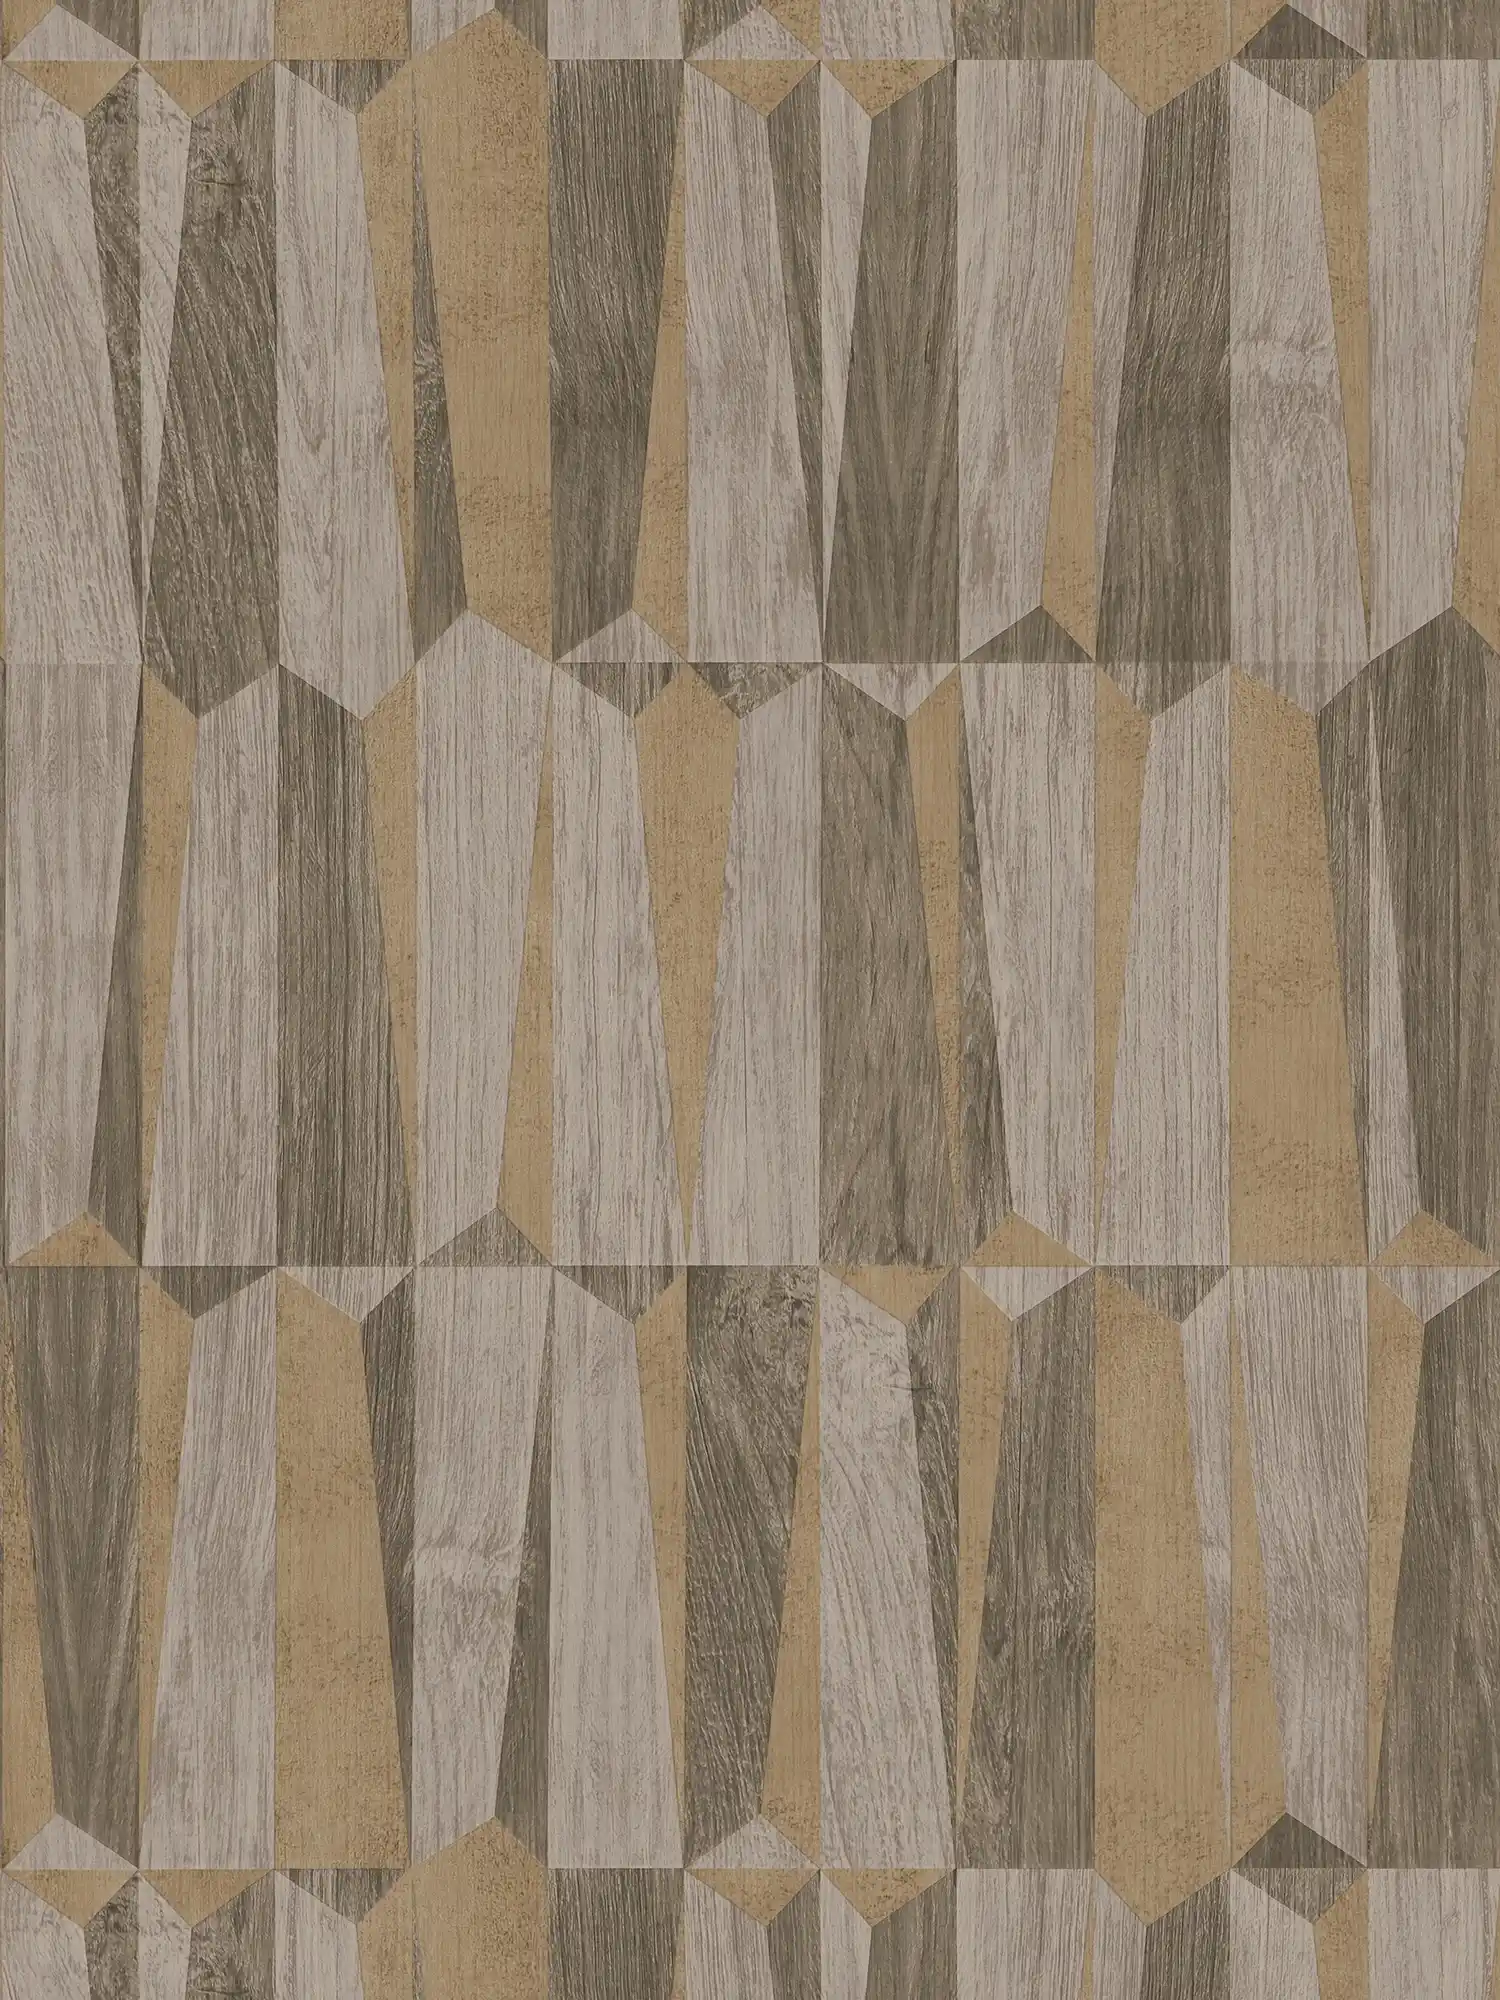 Ethno behang met metallic & houteffect - bruin, grijs
